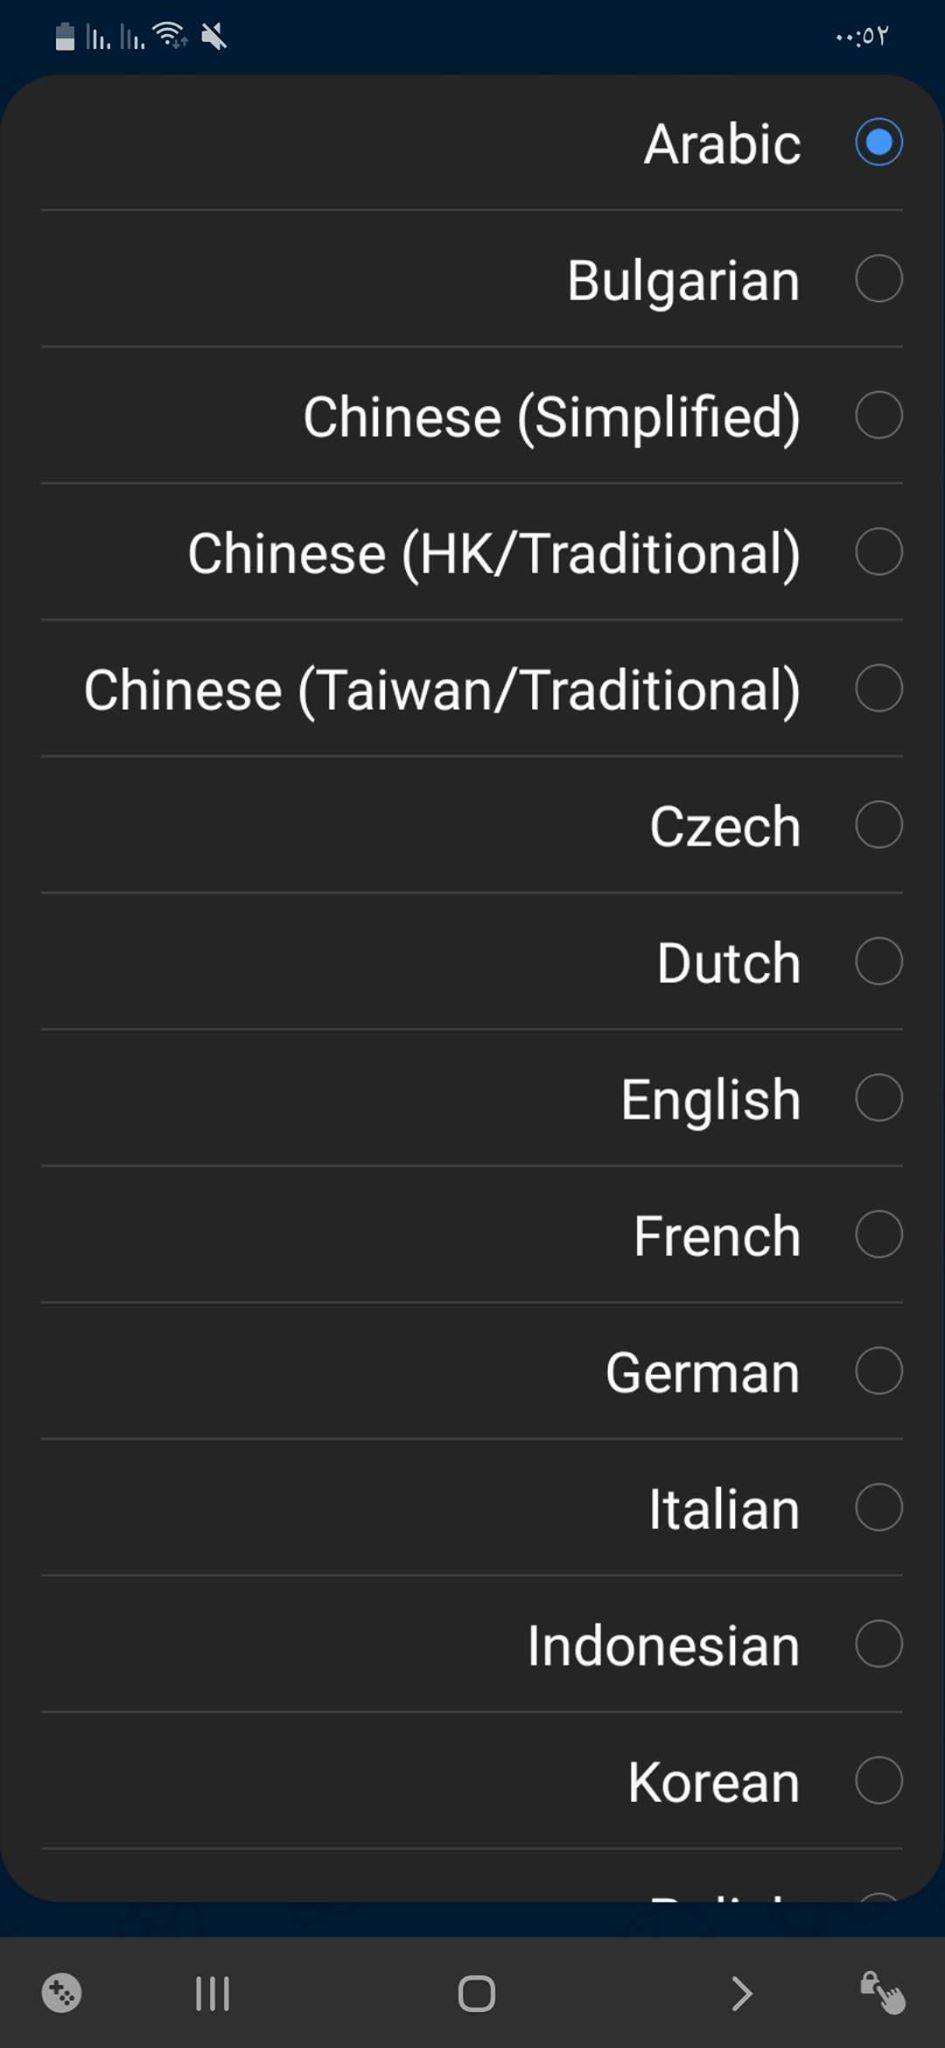 اللغات التي يدعمها التطبيق